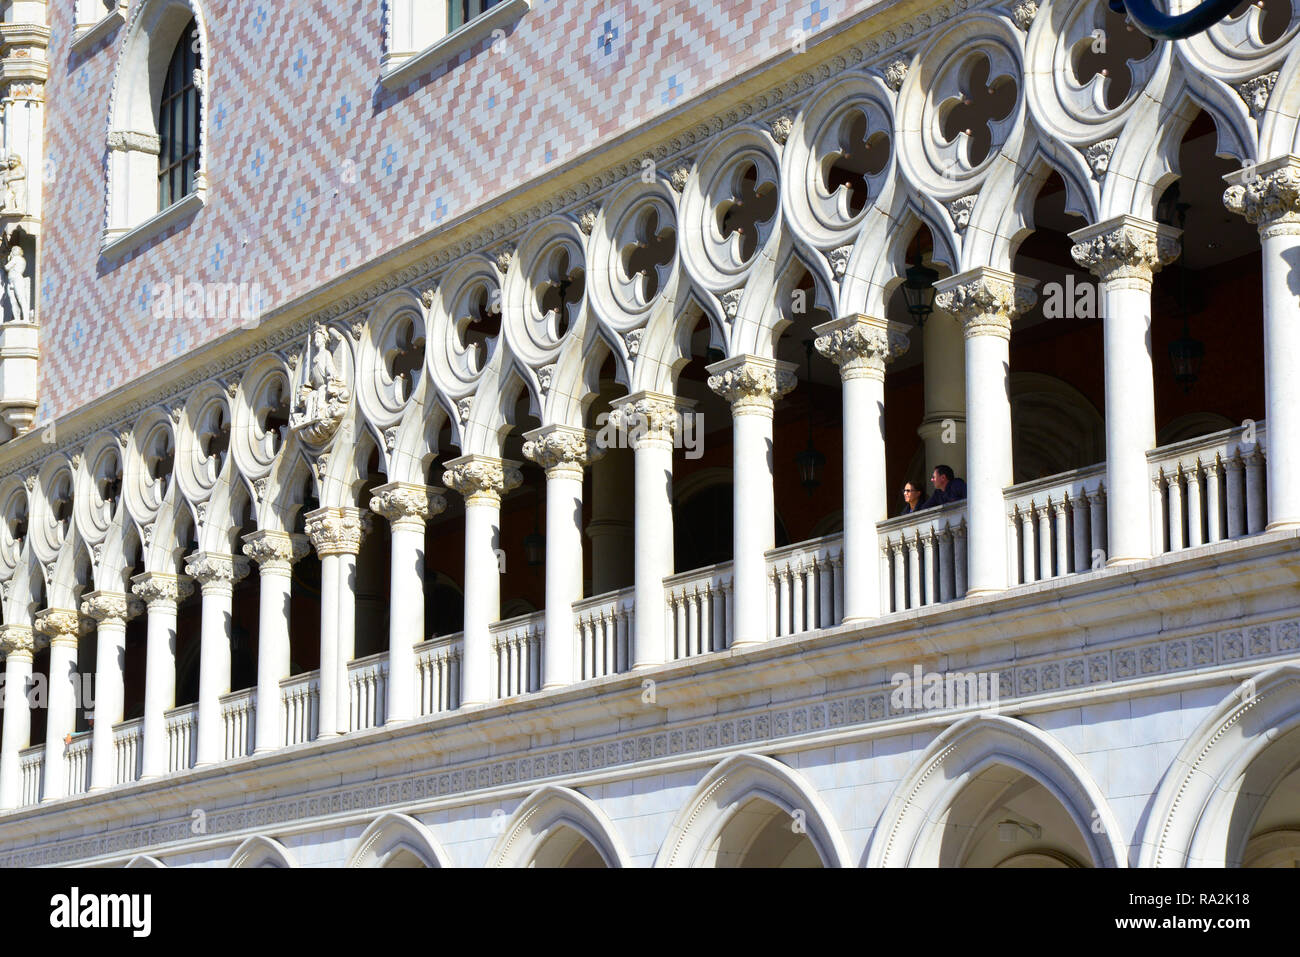 Les gens peuvent être vus peering dehors entre les colonnes et au-dessus de la balastraude de la réplique du Palazzo Ducale au Veniceian, Las Vegas NV Banque D'Images